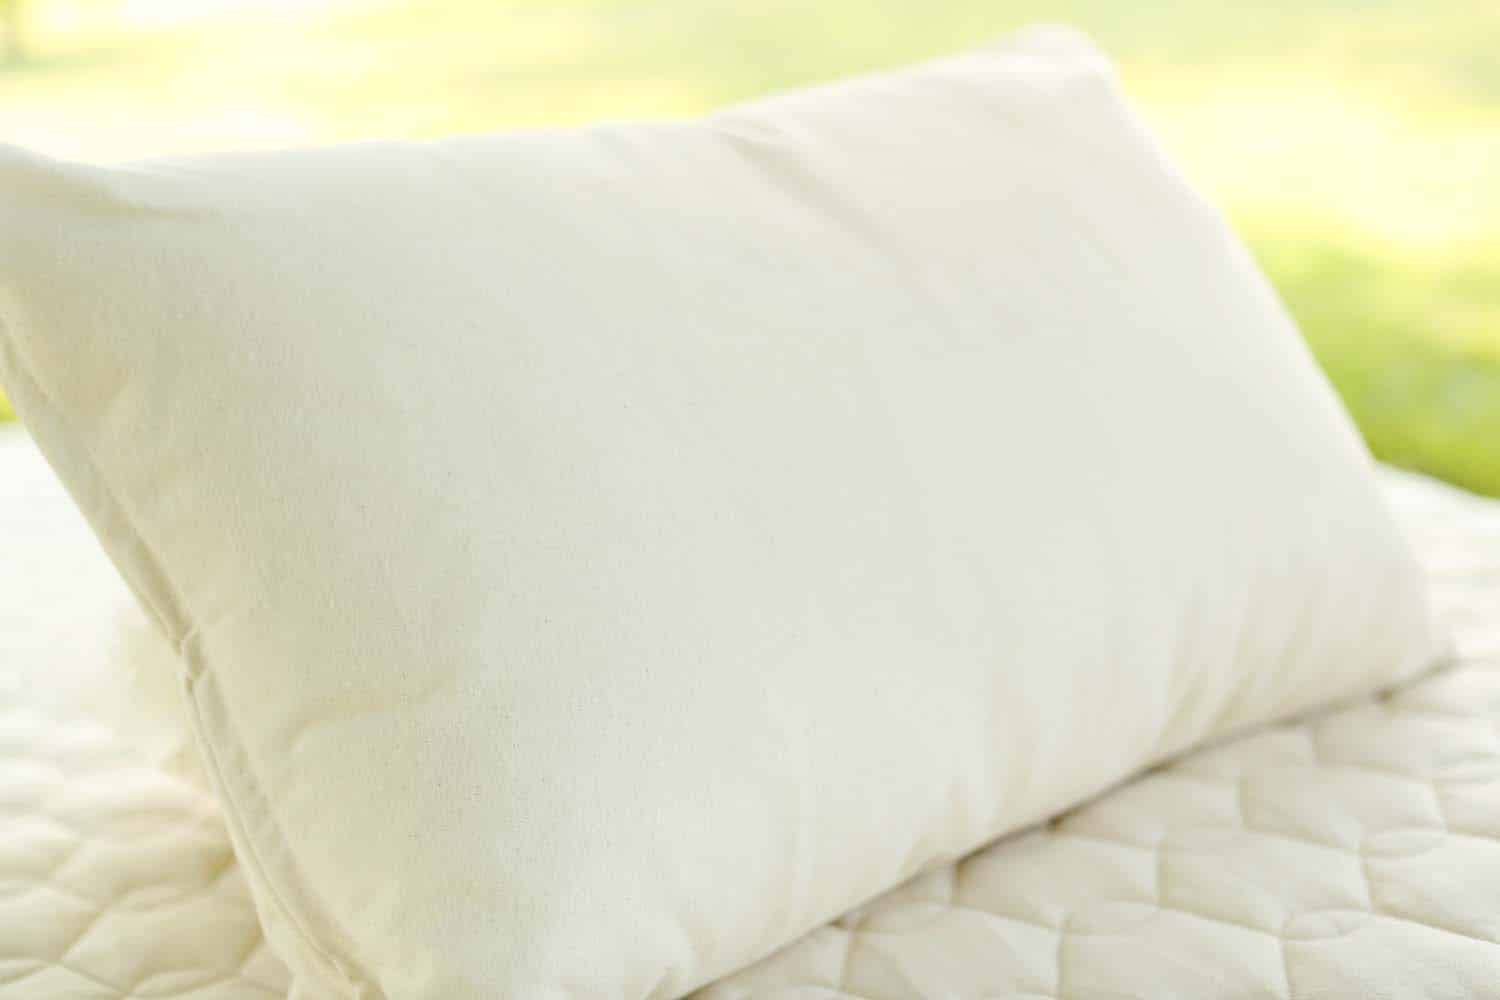 Kapok Pillow Kapok Throw Pillows - 100% Fully Organic - Euro Sizes